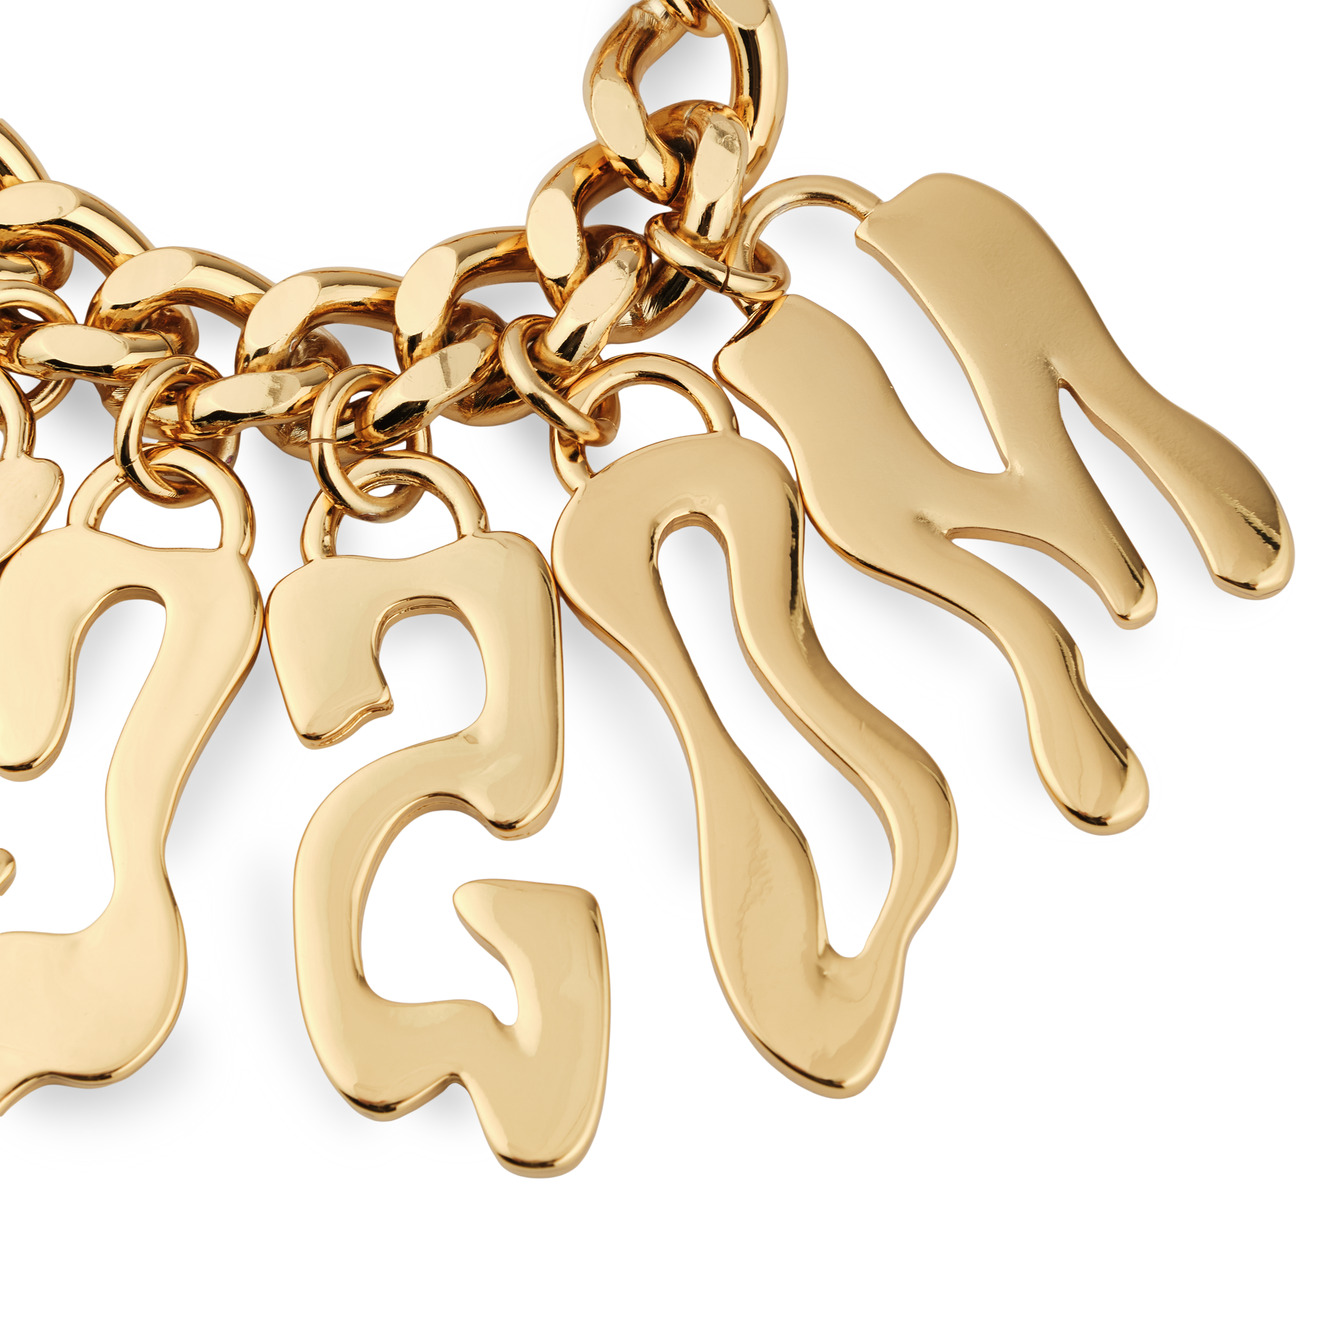 Moschino Золотистый браслет-цепь с расплывчатыми буквами lisa smith золотистый открытый браслет с античным мужским ликом